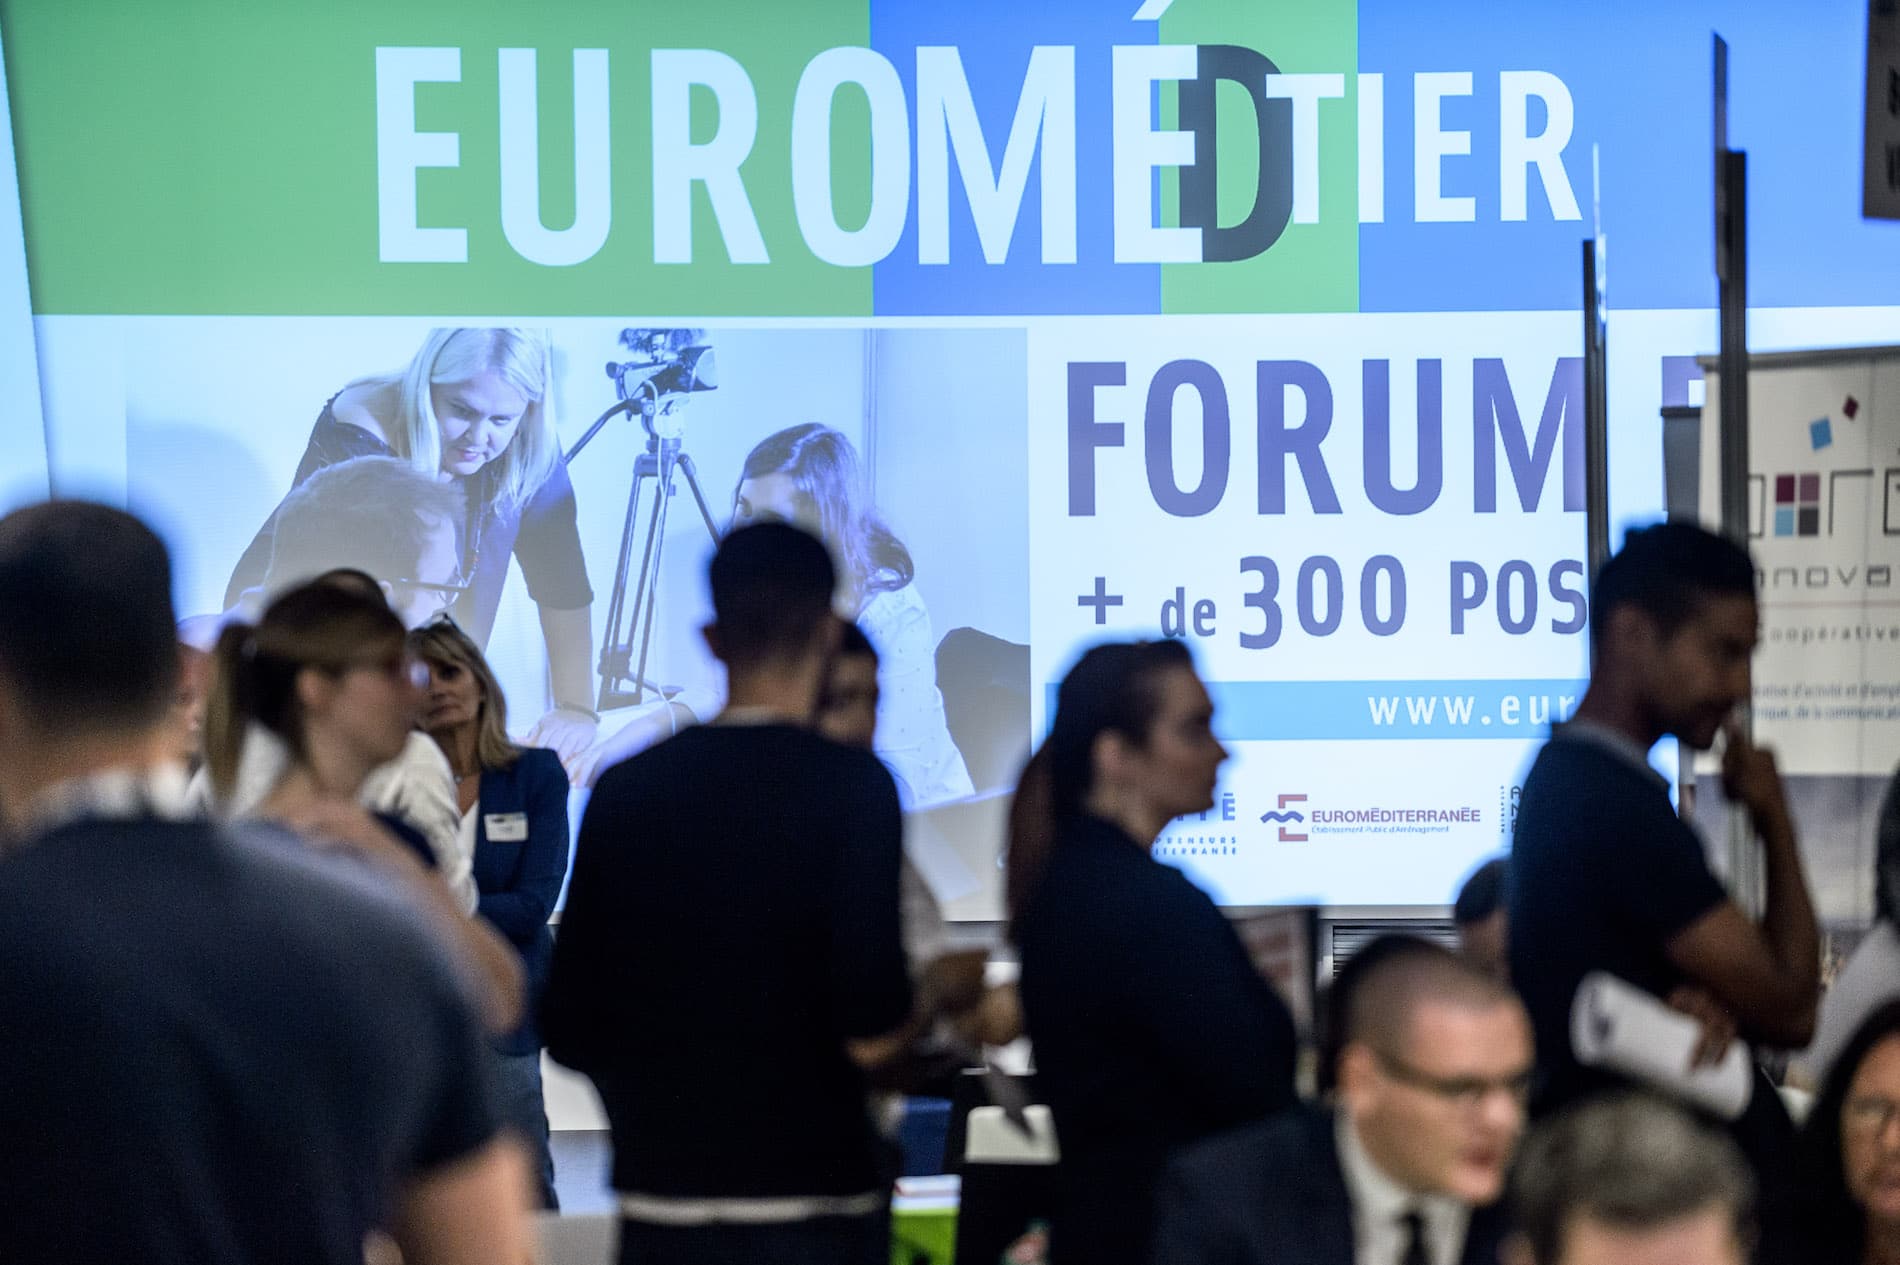 Euromed’tier, Plus de 300 offres d’emploi à pourvoir le 4 octobre au salon Euromed’tier, Made in Marseille